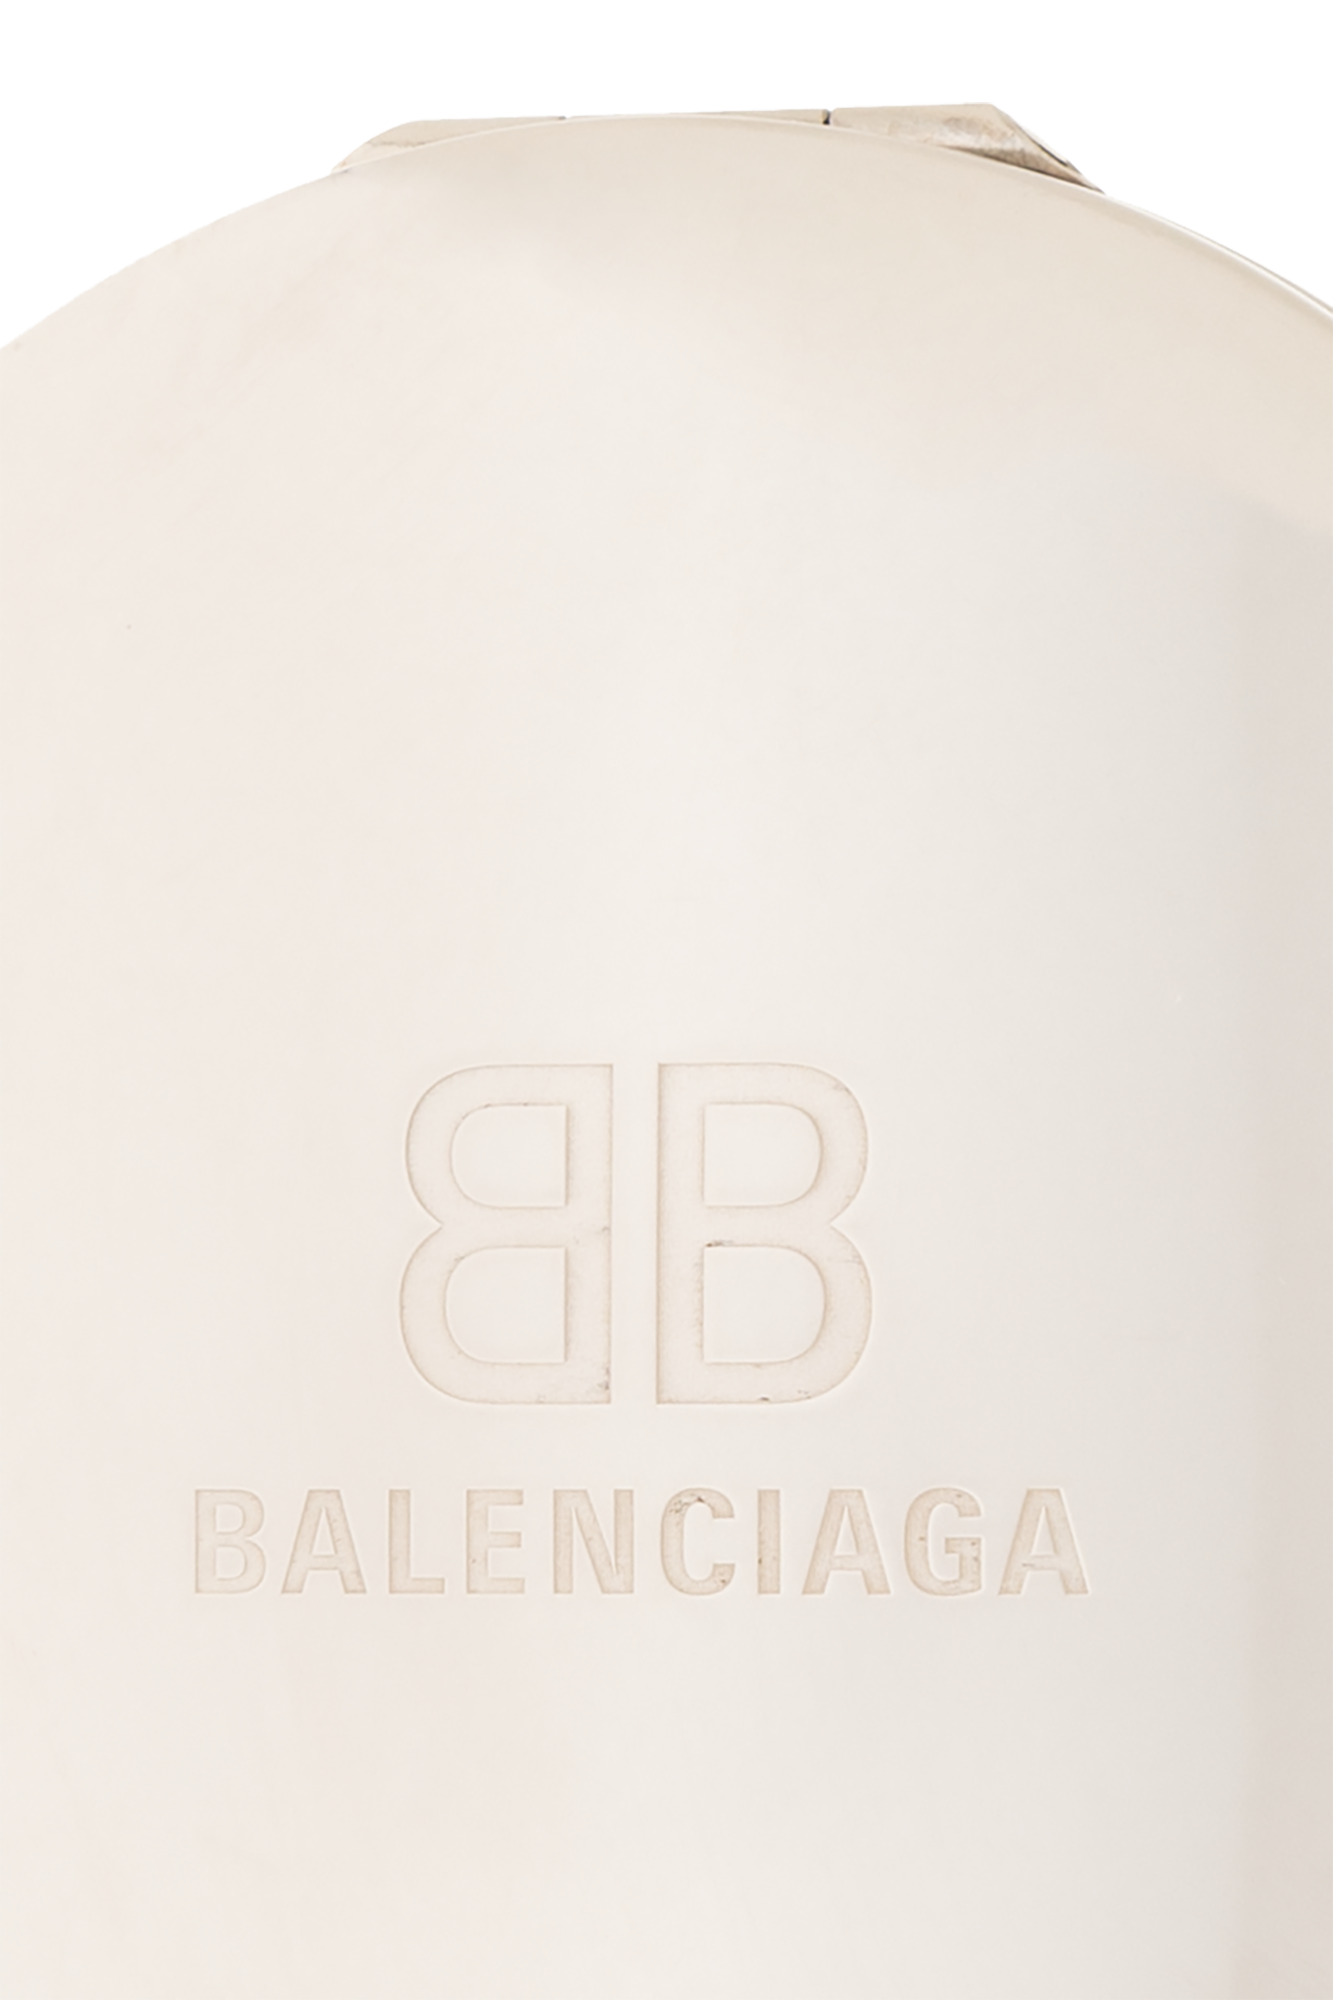 Balenciaga Mirror with logo